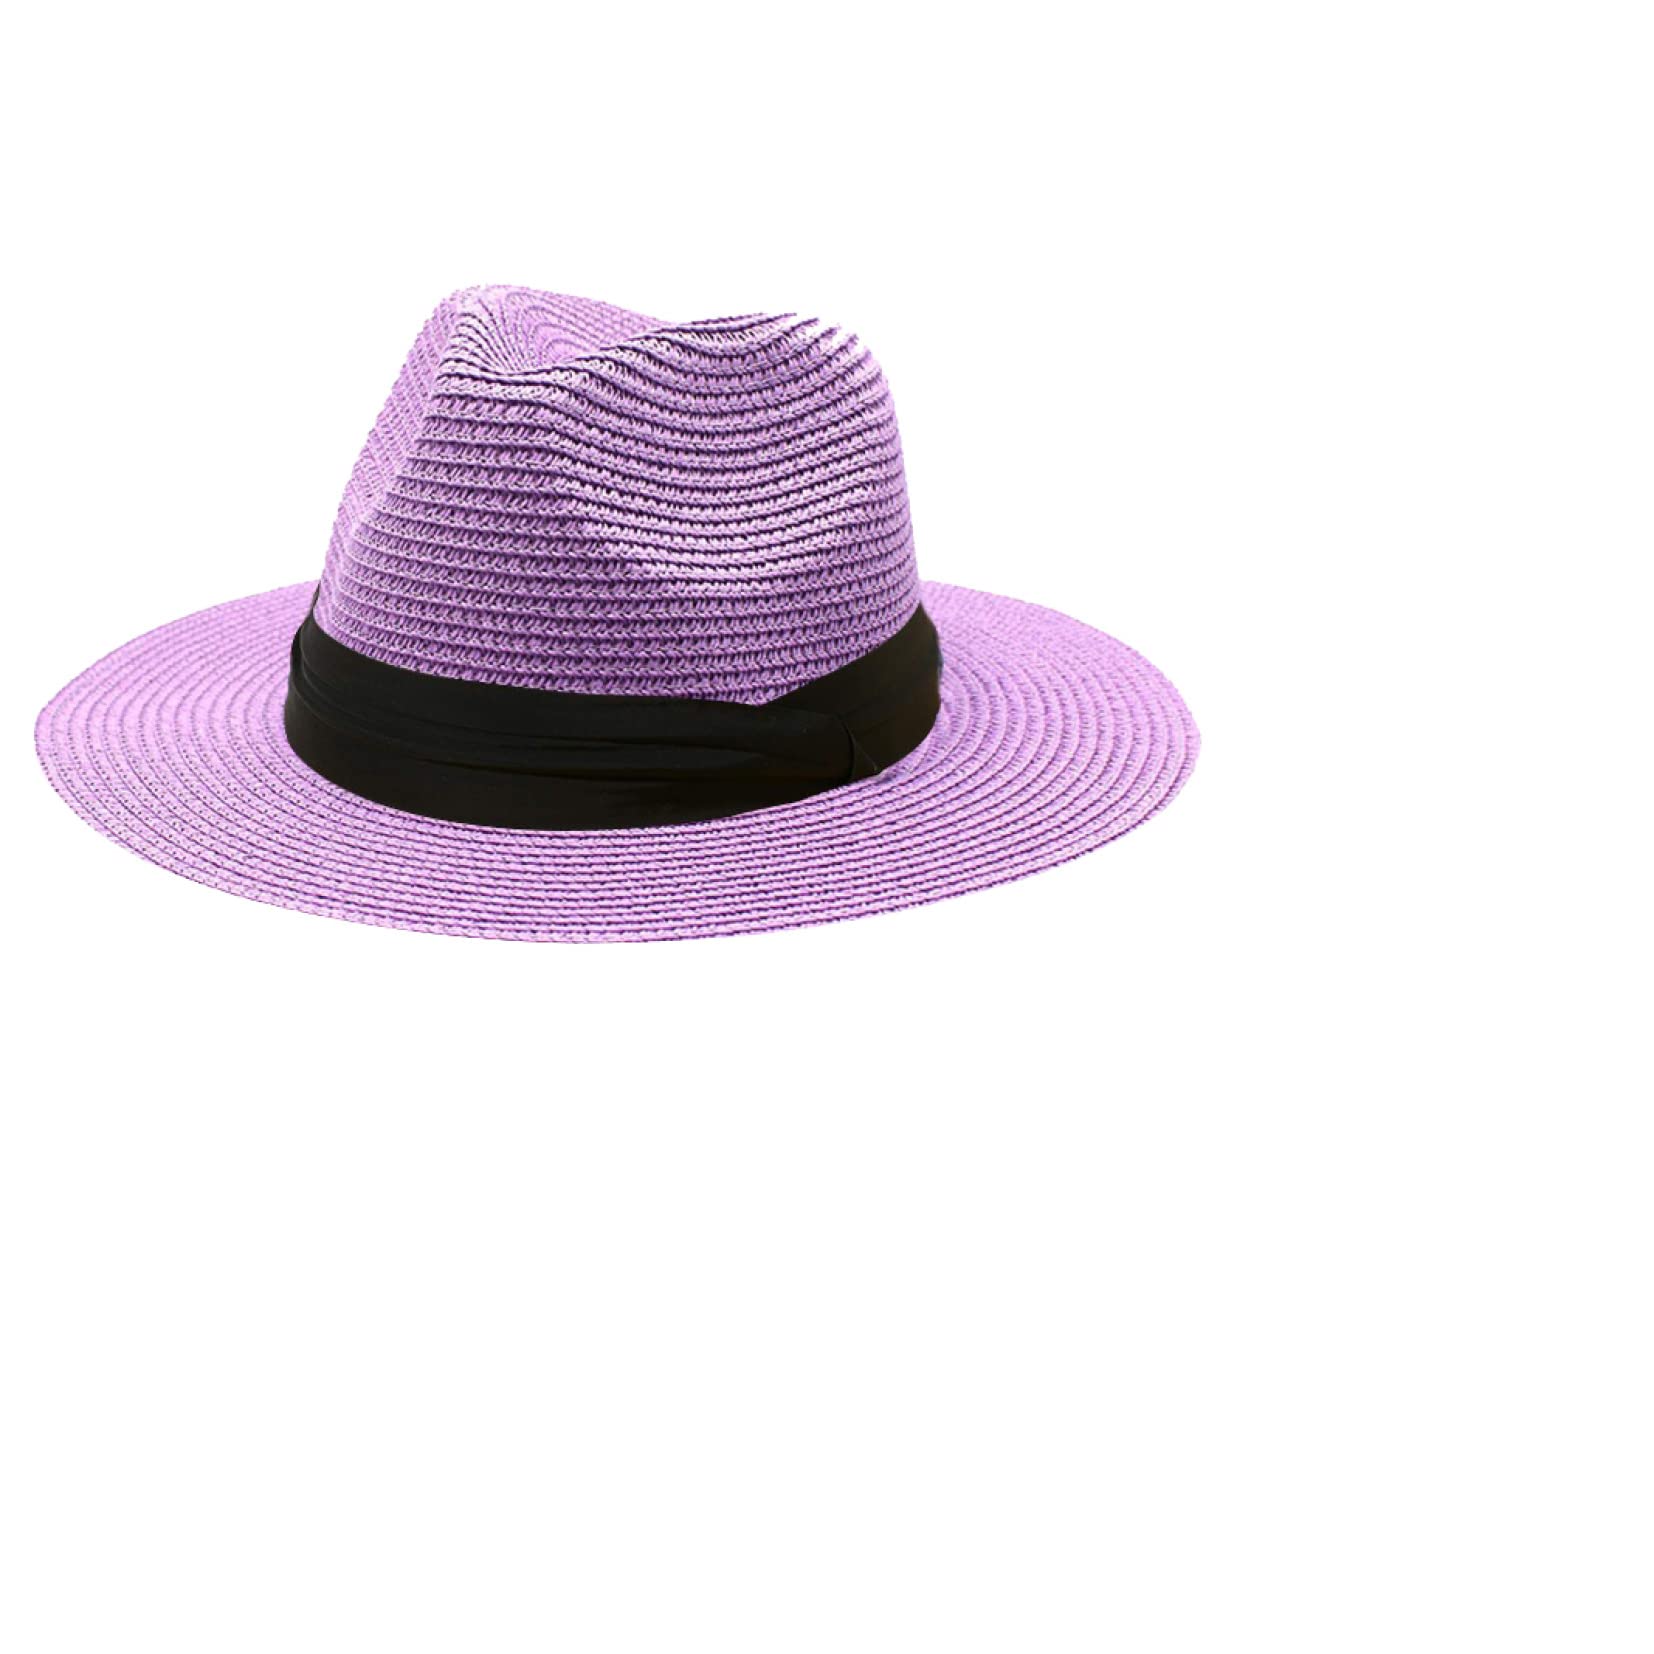 送料無料Men and Women Straw Fedora Hat Wide Brim Panama Sun Hat with Black Band Light Travel Beach Summer Hats並行輸